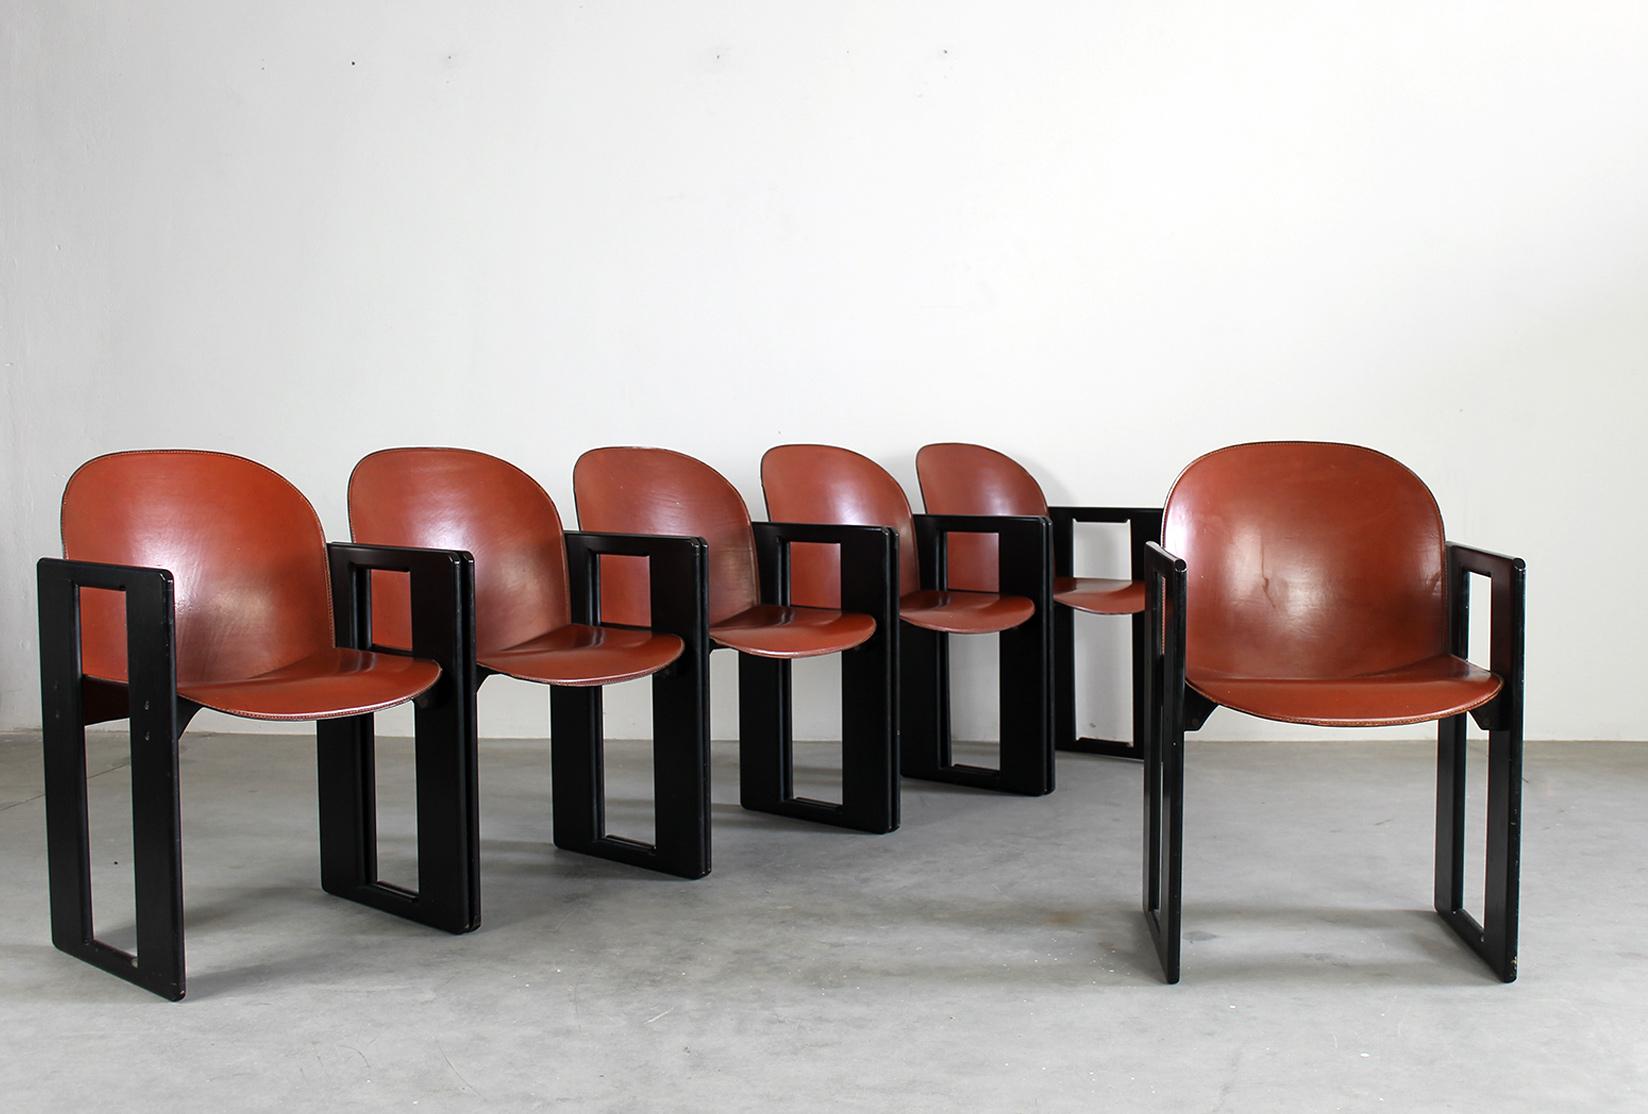 Sechser-Set Dialogo mit Struktur aus schwarz lackiertem Holz, Sitz und Rückenlehne aus Leder und Metalldetails. 
Entworfen von Tobia & Afra Scarpa und hergestellt von B&B Italia in den 1970er Jahren

Der Stuhl Dialogo hat einen besonderen